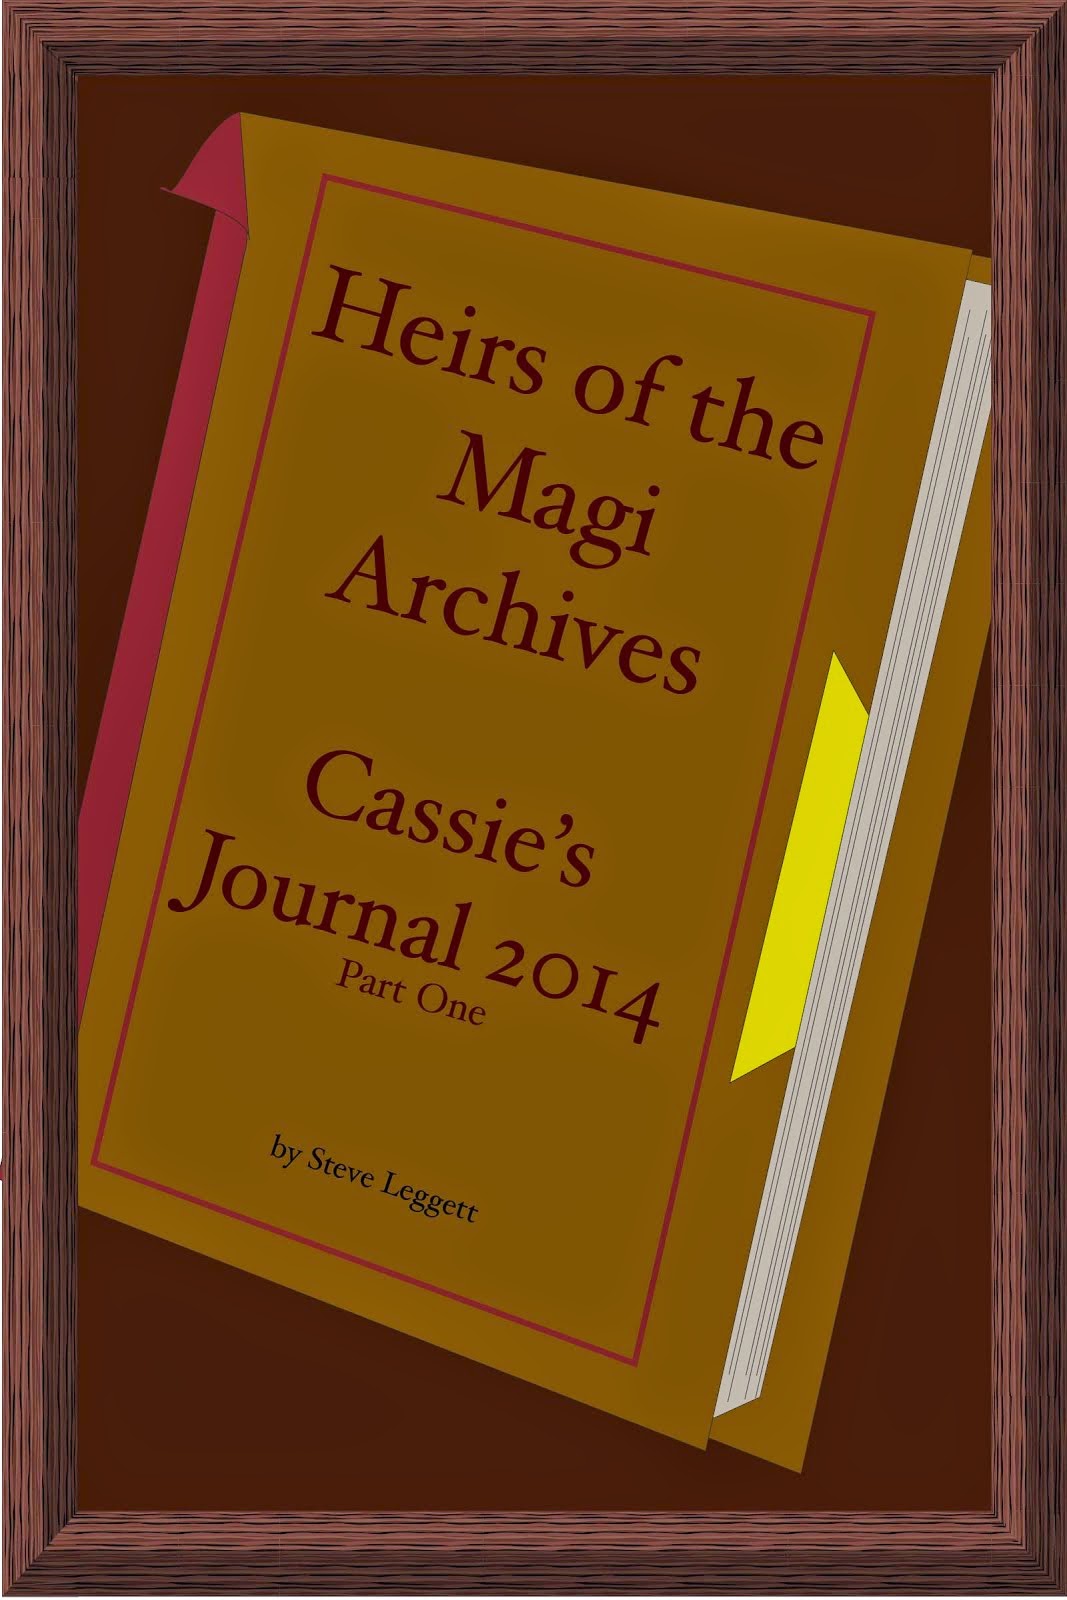 Cassie's Journal 2014 - Part One